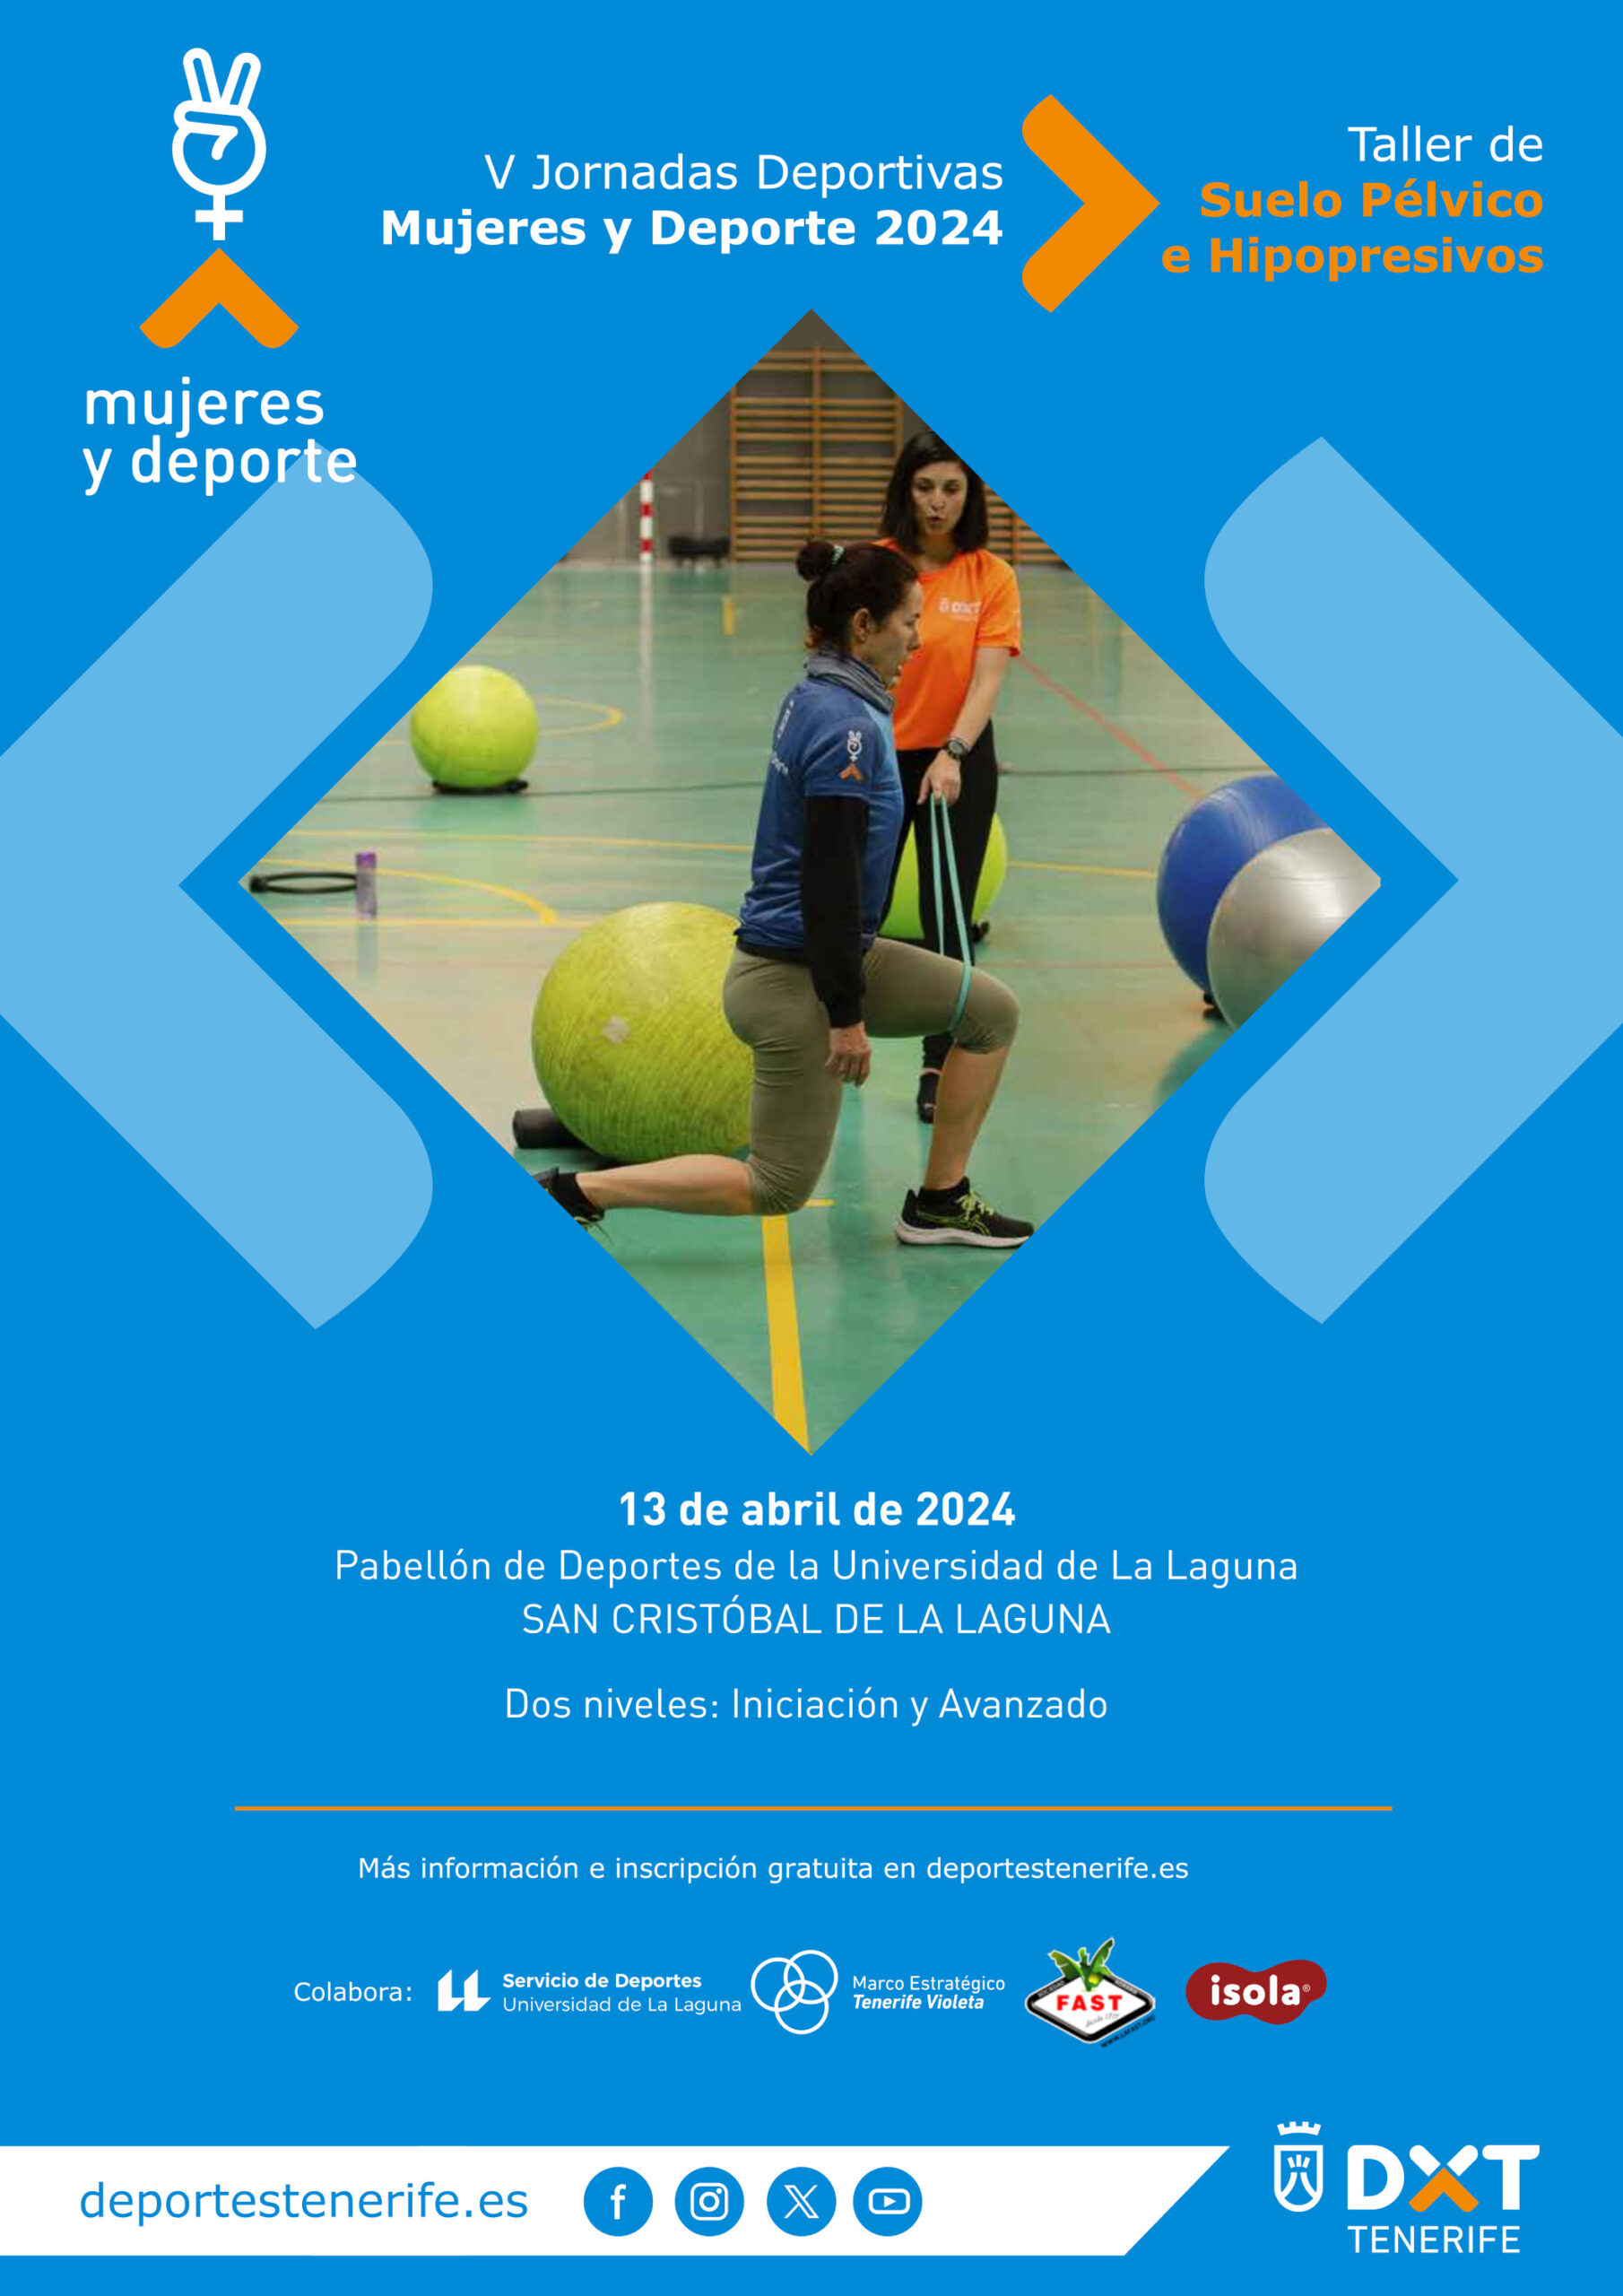 V Jornadas Deportivas Mujeres y Deporte 2024 - Talleres de Suelo Pélvico e Hipopresivos